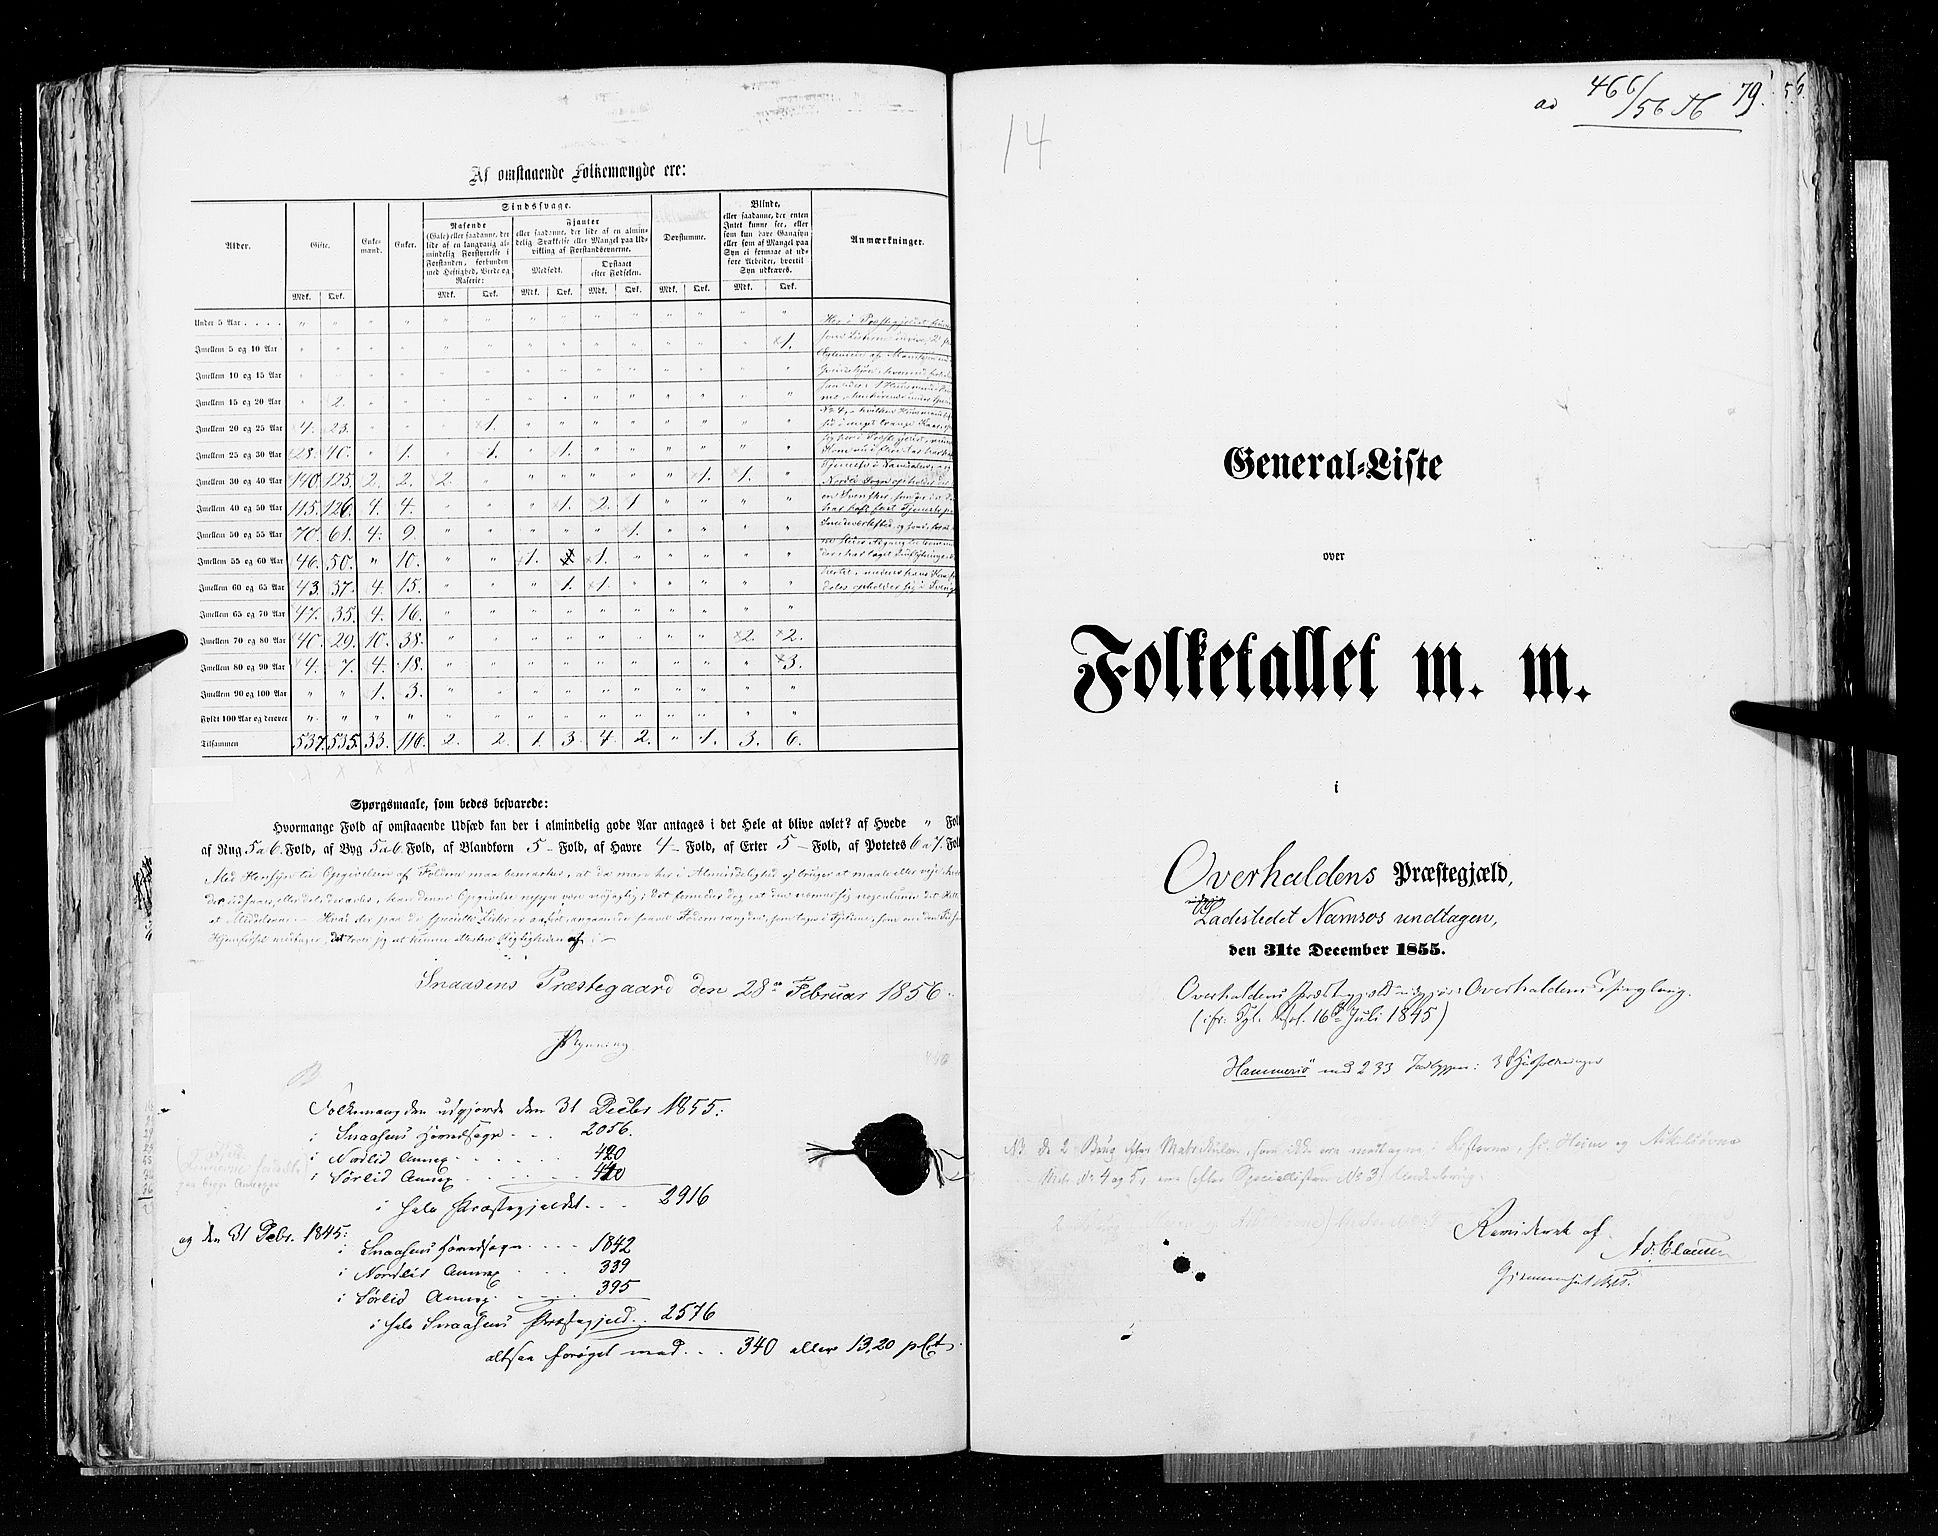 RA, Census 1855, vol. 6A: Nordre Trondhjem amt og Nordland amt, 1855, p. 79